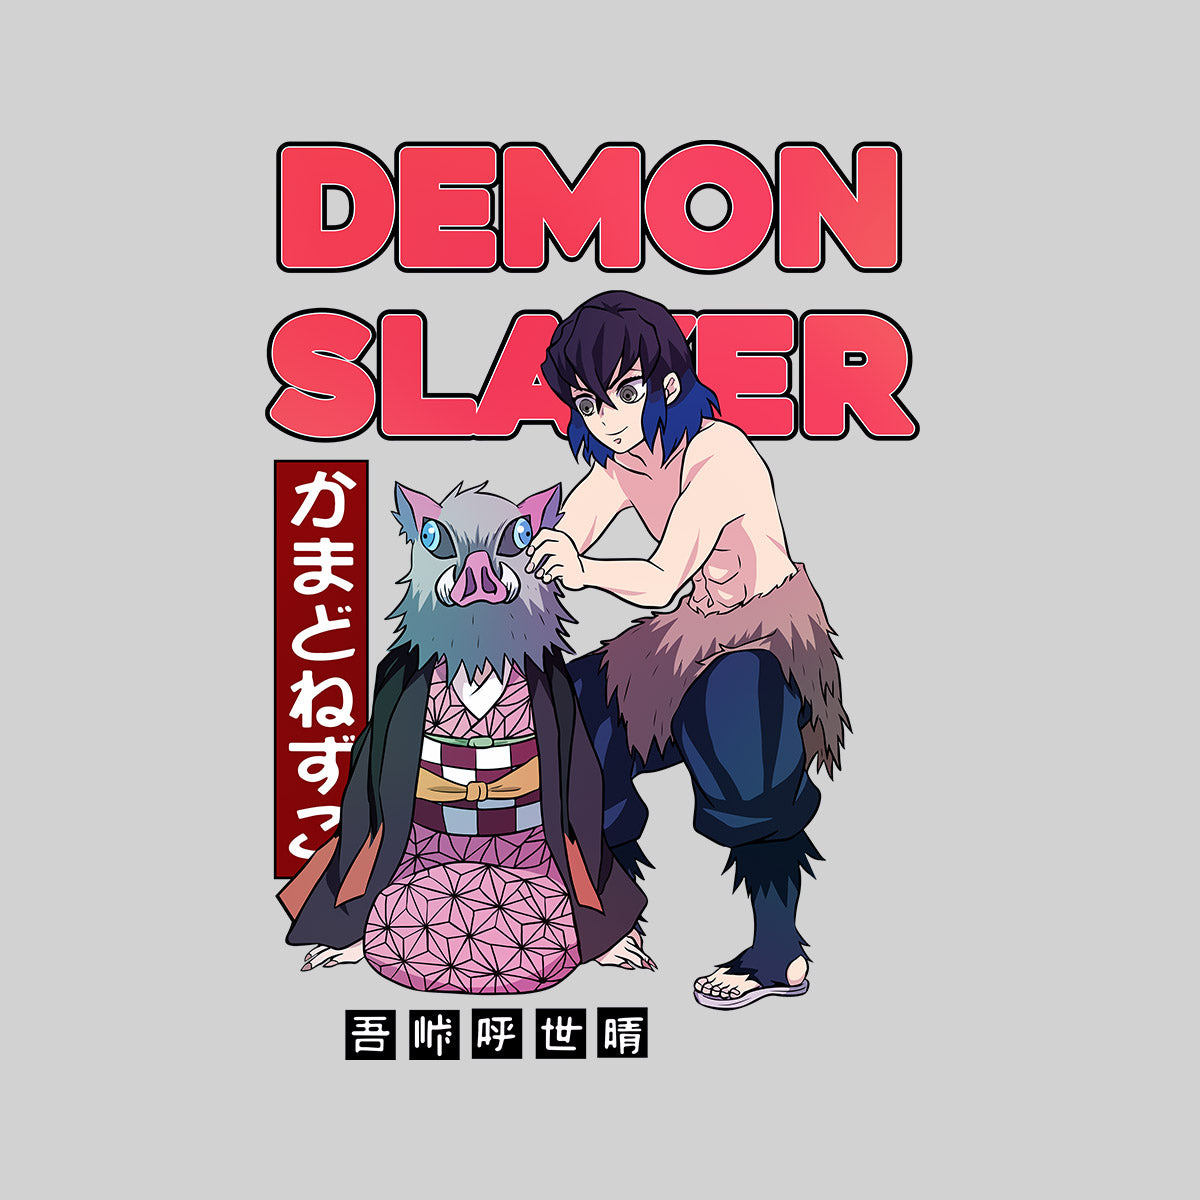 Demon Slayer Nezuko And Inosuke Anime Manga Lover Gift Adult Unisex T-shirt